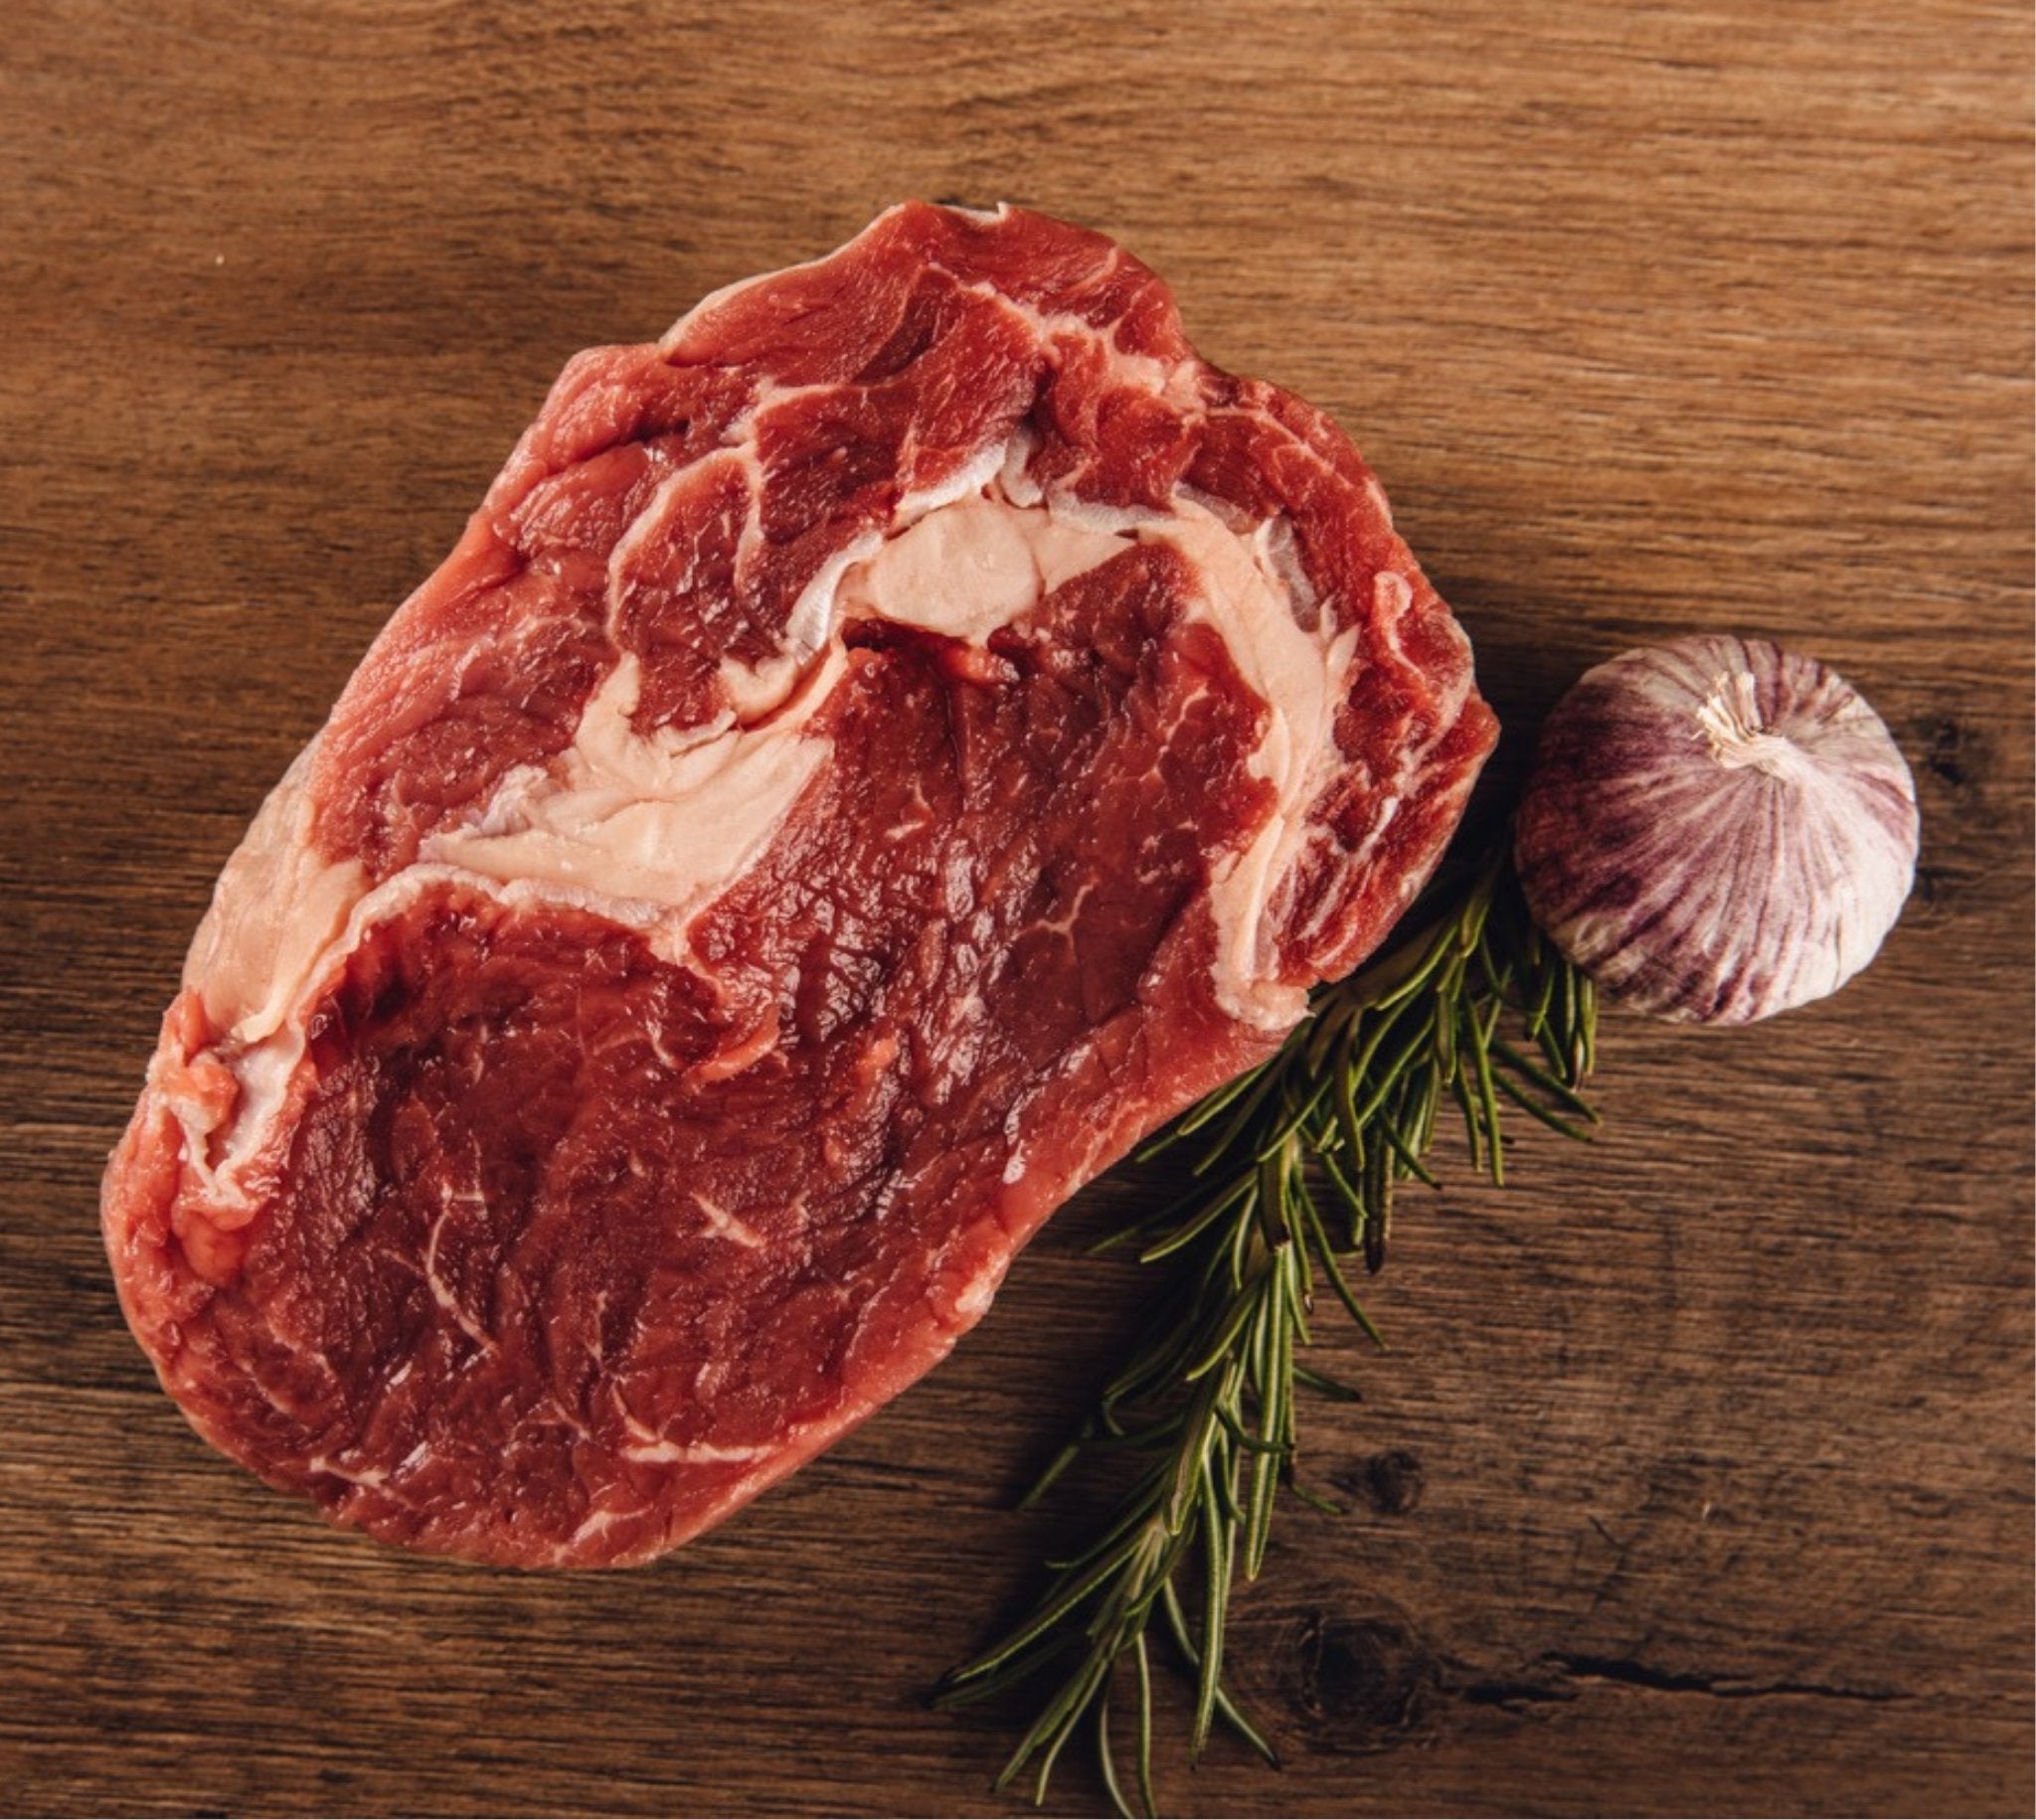 Rib-Eye Steak Bodensee Färse - Saftiger Allrounder bei BüffelBill Genießen Sie das saftige Rib-Eye Steak von der Bodensee Färse bei BüffelBill! Perfekt marmoriert, geschnitten aus der Hochrippe, bietet unser Steak-Klassiker Entrecôte einen unvergleichlich